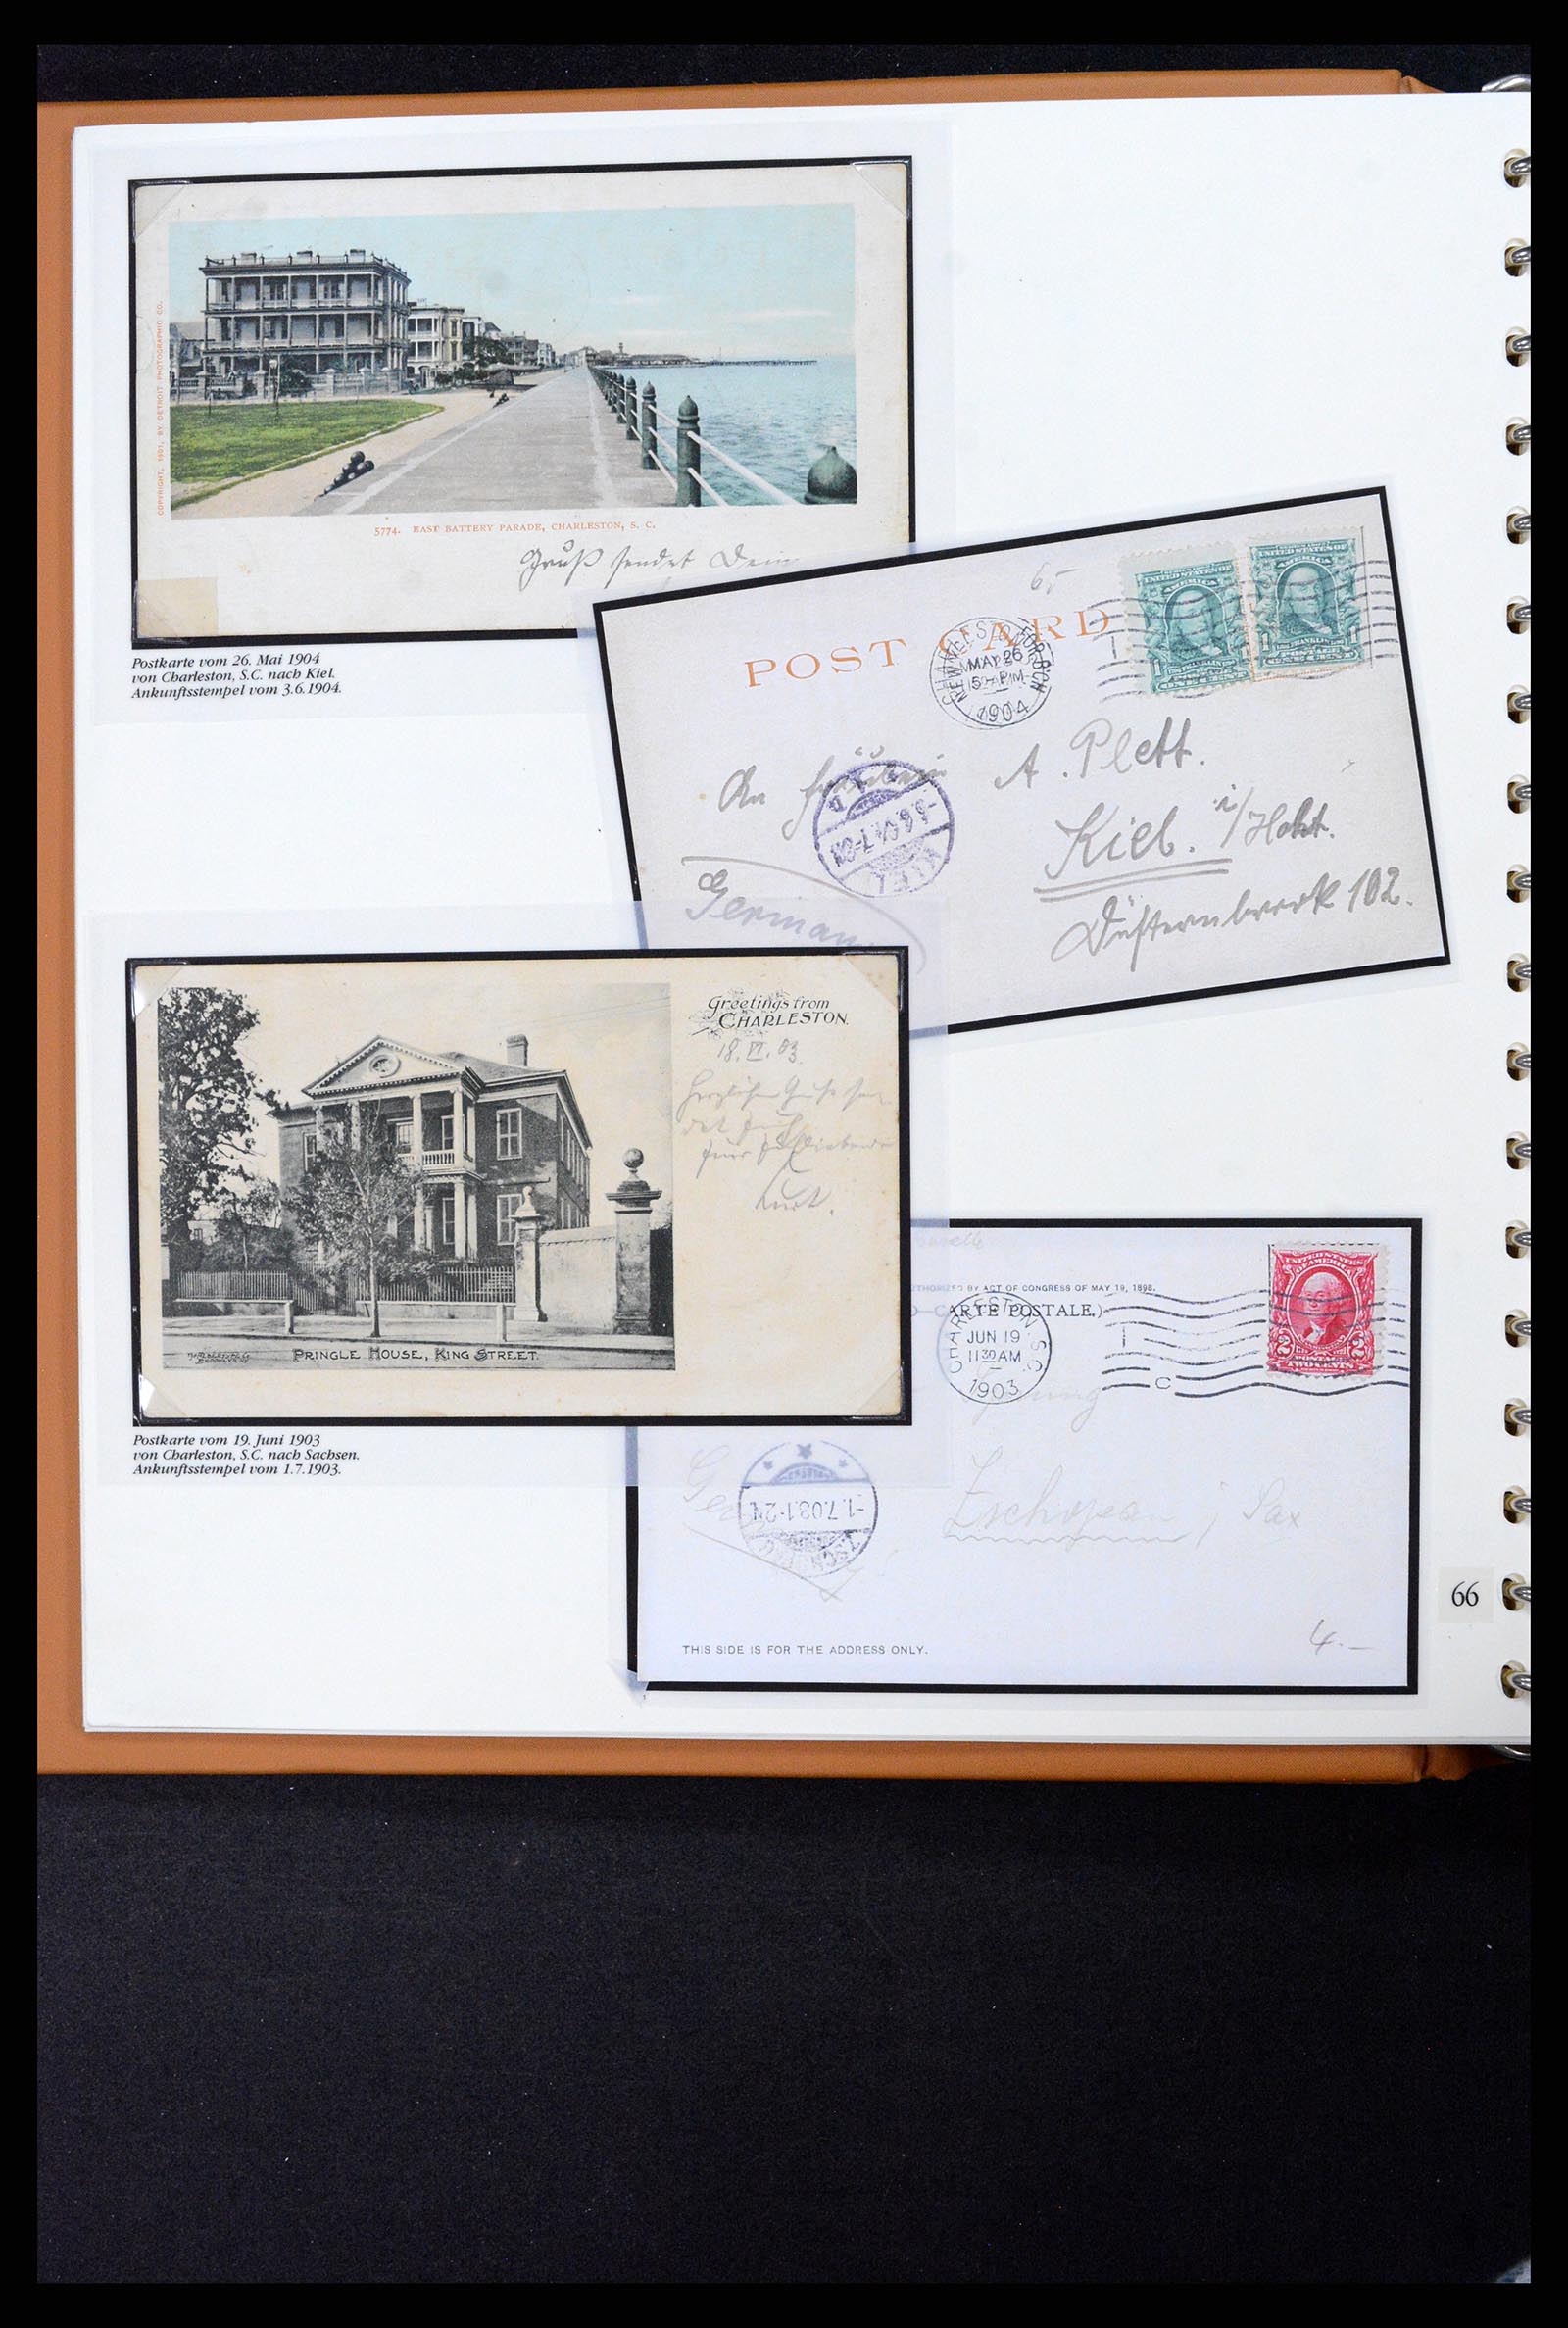 37653 025 - Stamp collection 37653 USA 1870-1954.